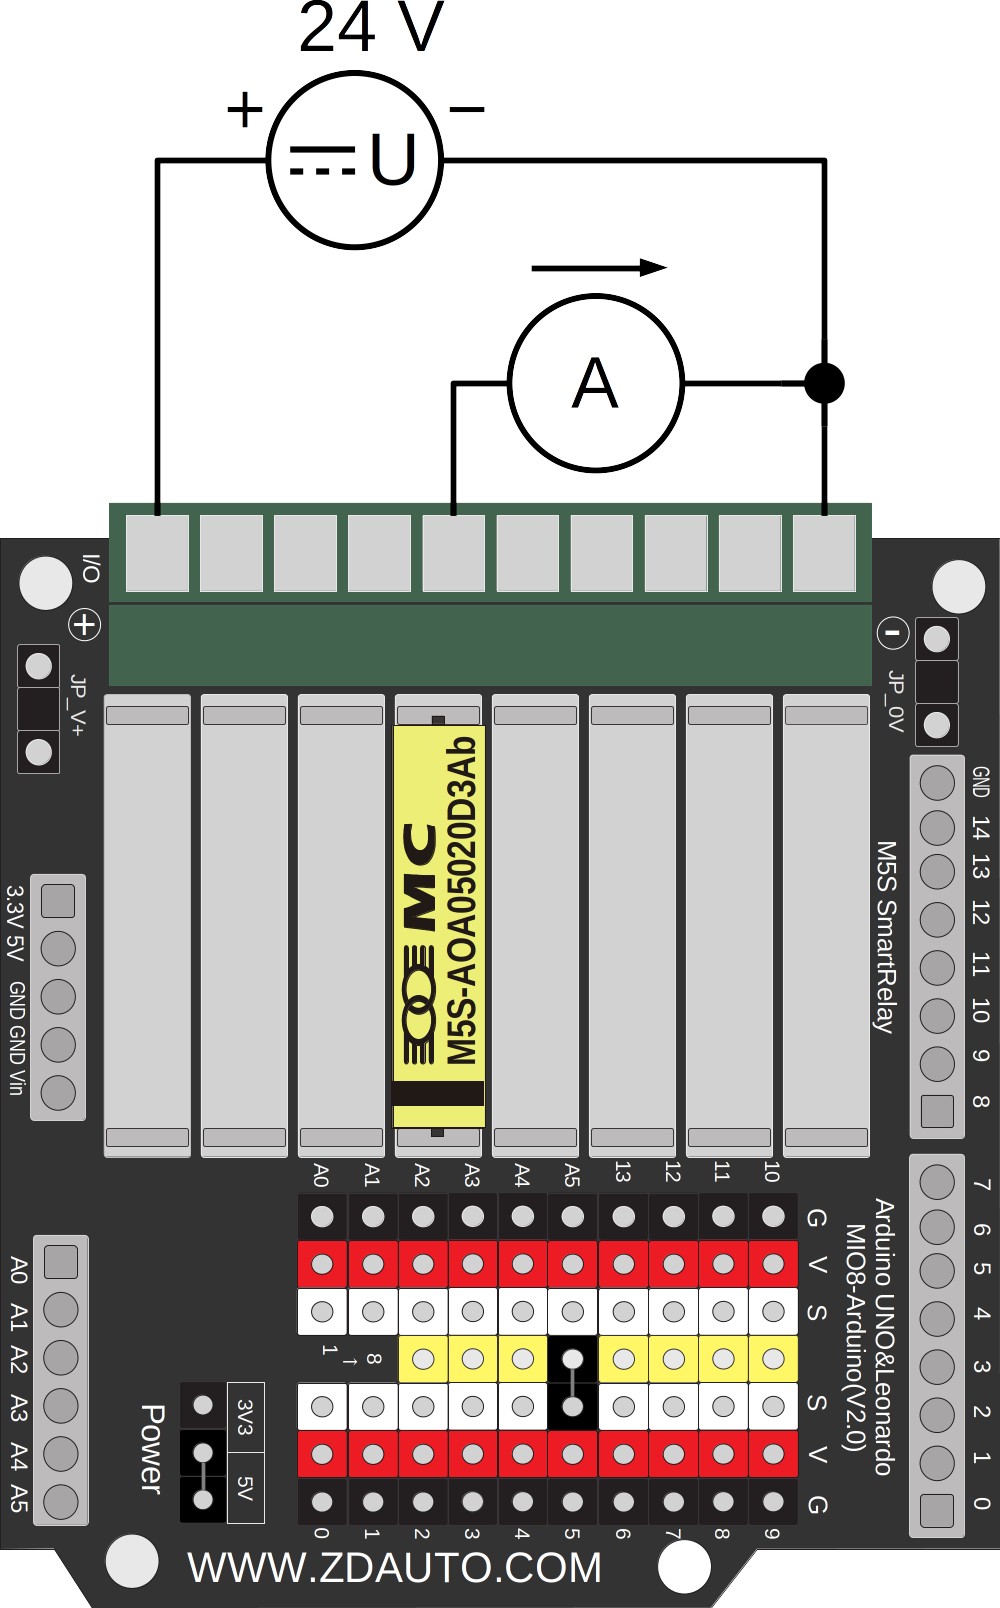 Ausgeben eines Analogsignals 0 - 20 mA mit Spannungsversorgung 24 V DC. M5S 4 verbunden mit Arduino Digital-Pin 5.